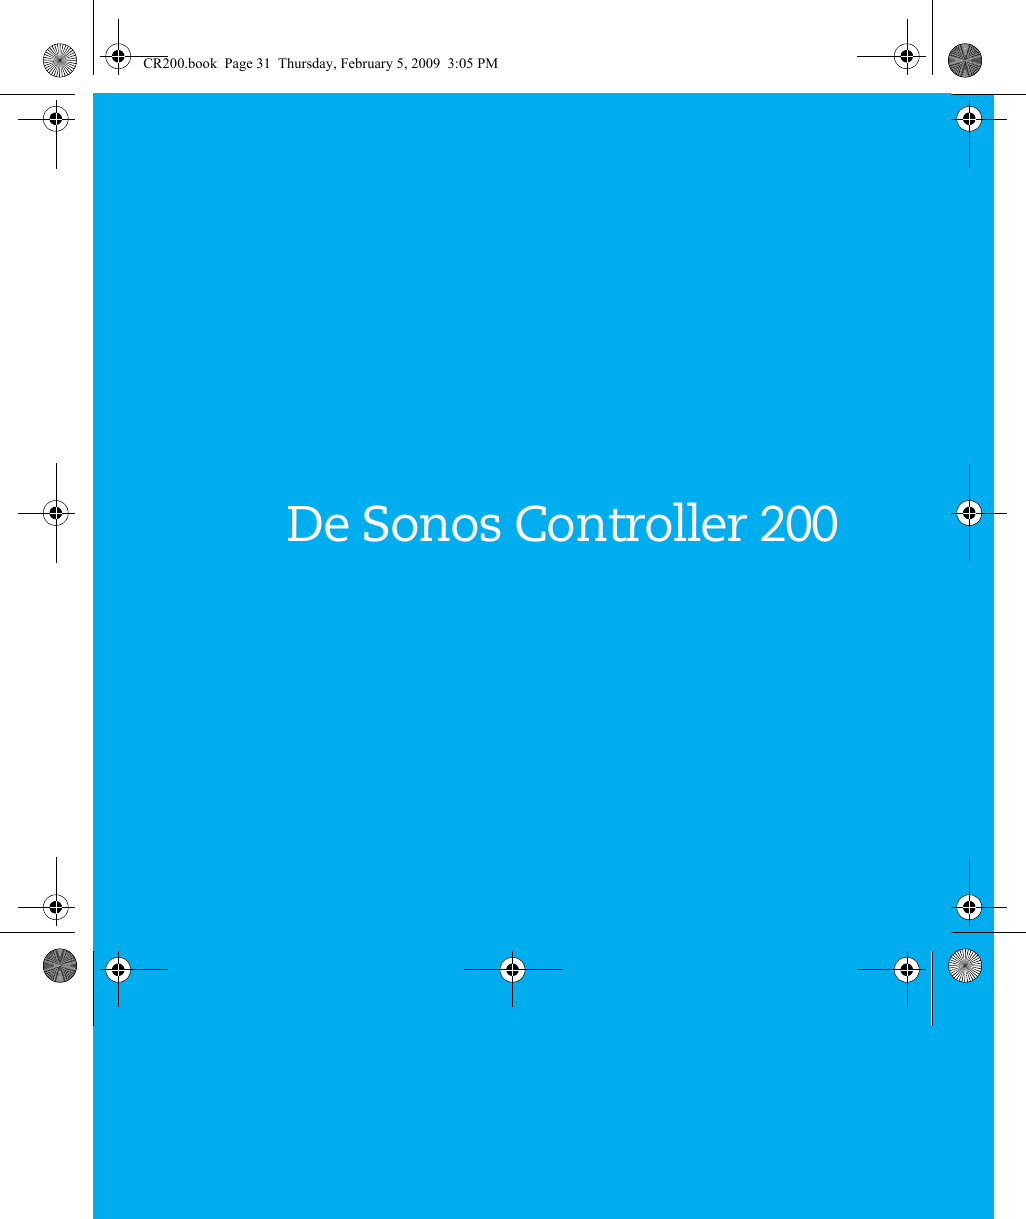 De Sonos Controller 200CR200.book  Page 31  Thursday, February 5, 2009  3:05 PM